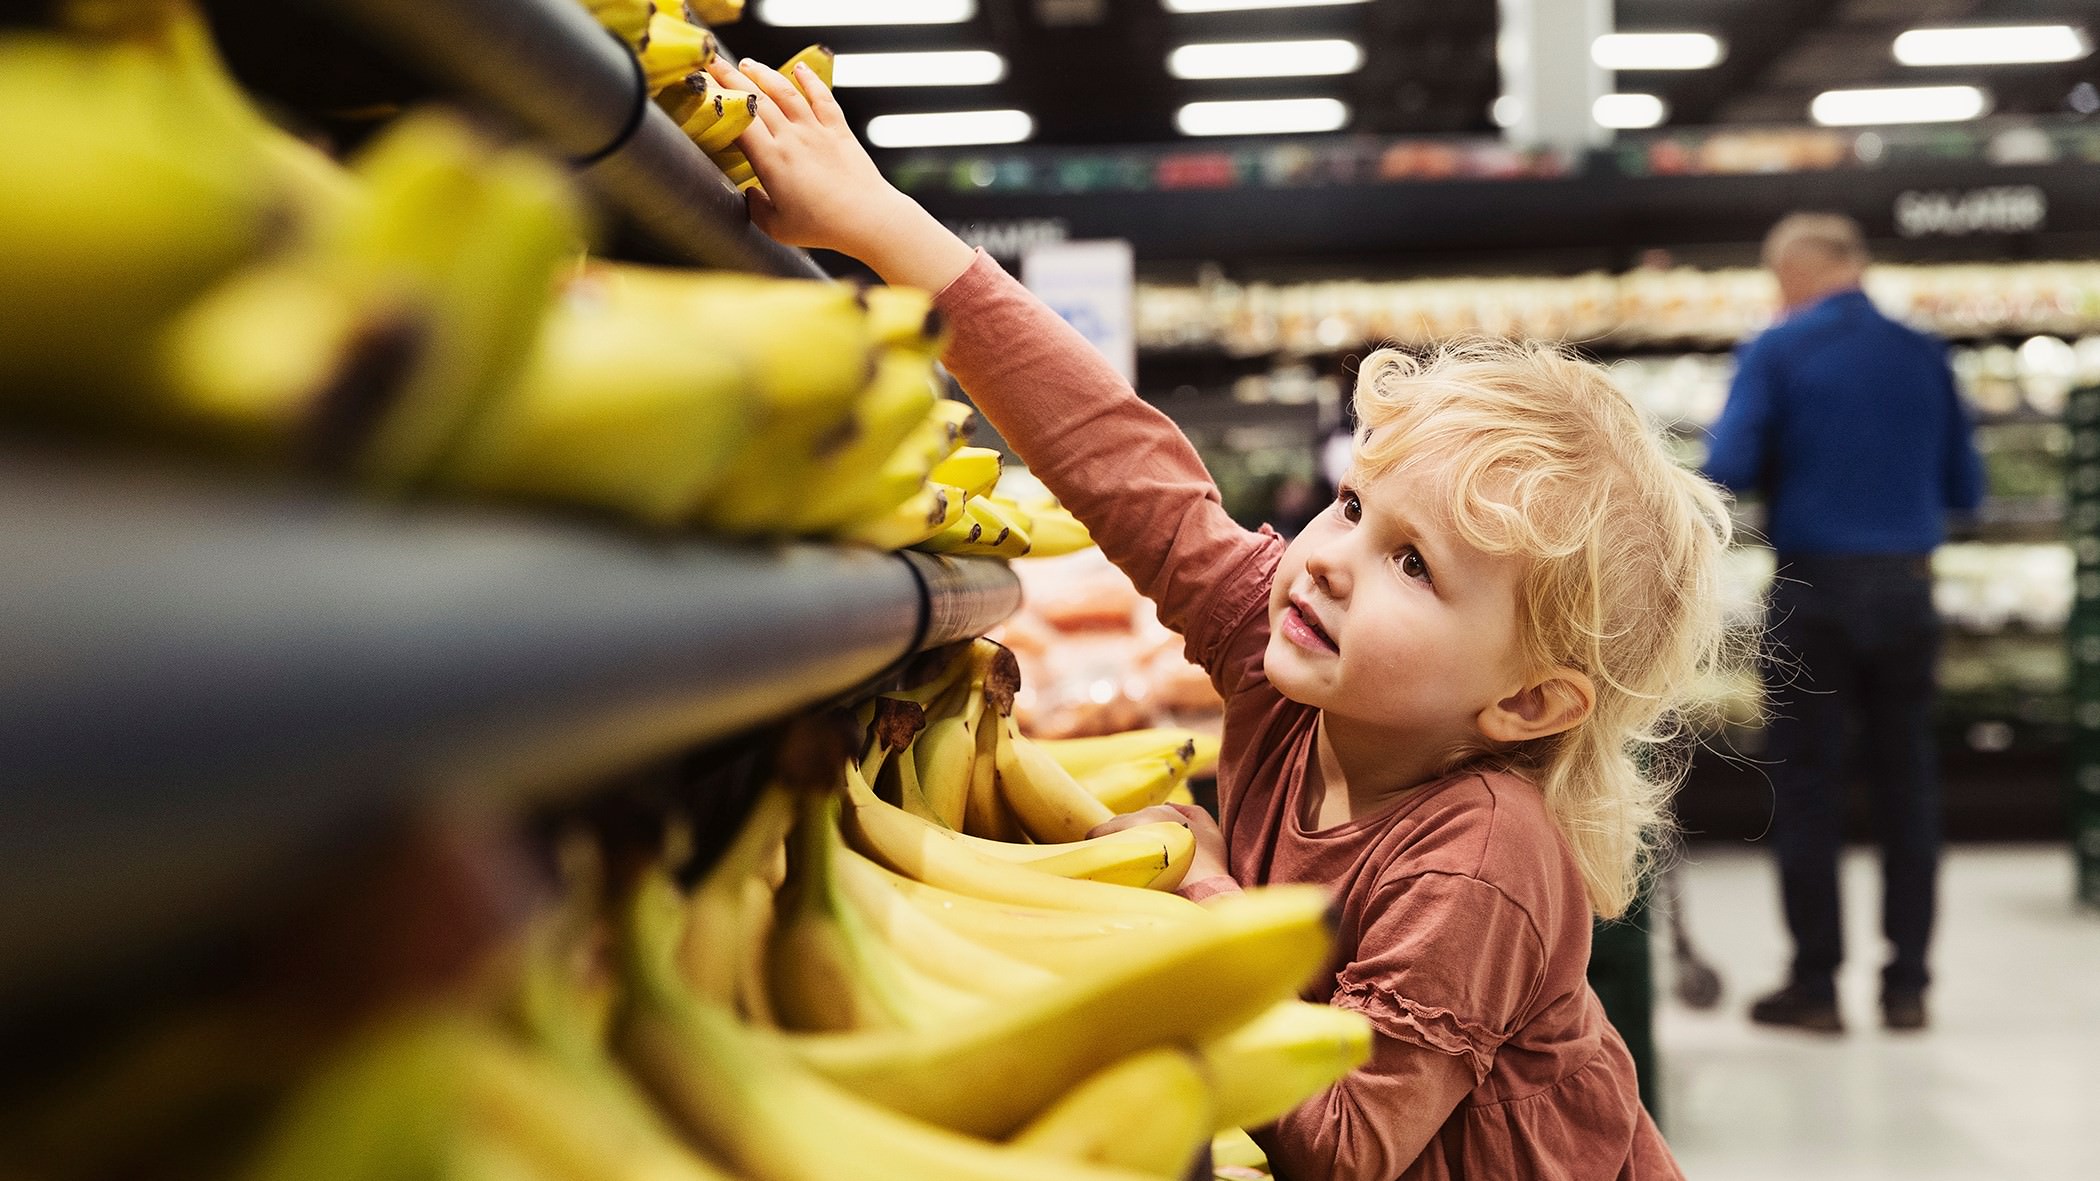 Barn rækker ud efter banan i butik